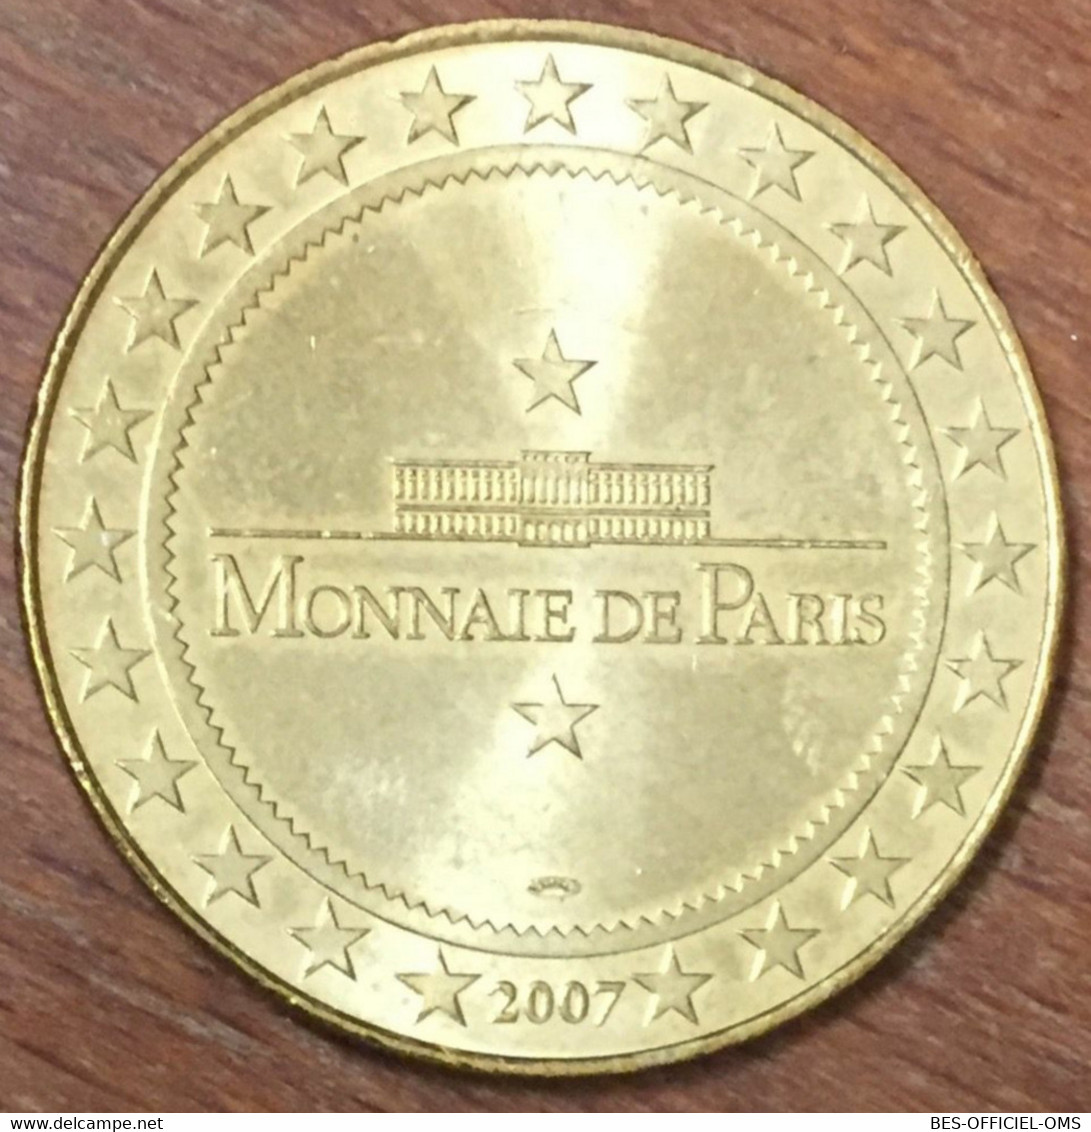 46 GROTTE DU PECH MERLE LOT MDP 2007 MÉDAILLE SOUVENIR MONNAIE DE PARIS JETON TOURISTIQUE TOKENS MEDALS COINS - 2007